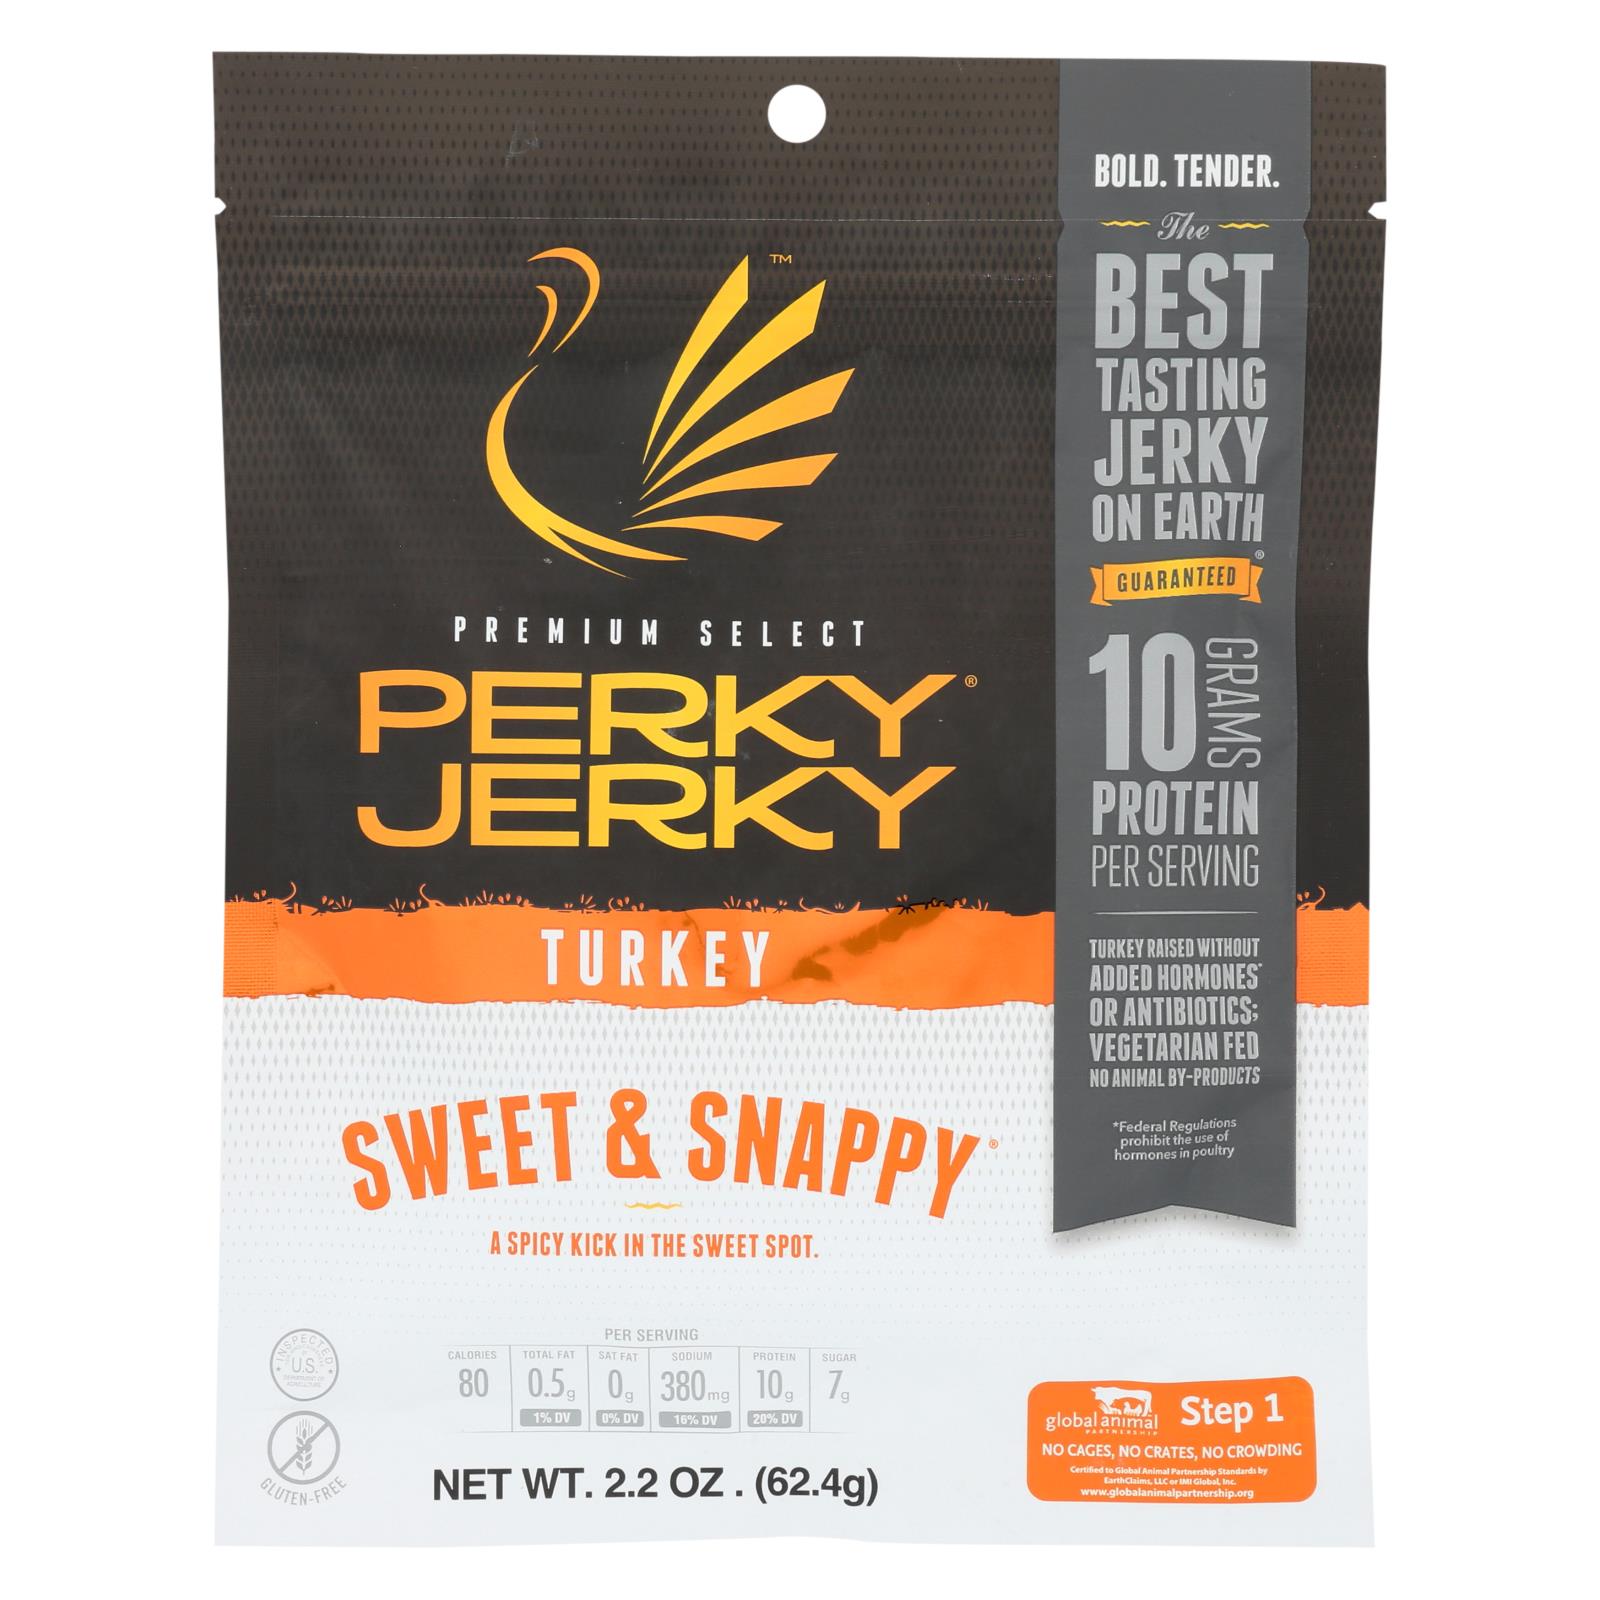 Perky Jerky Turkey Jerky, Sweet & Snappy - 8개 묶음상품 - 2.2 OZ